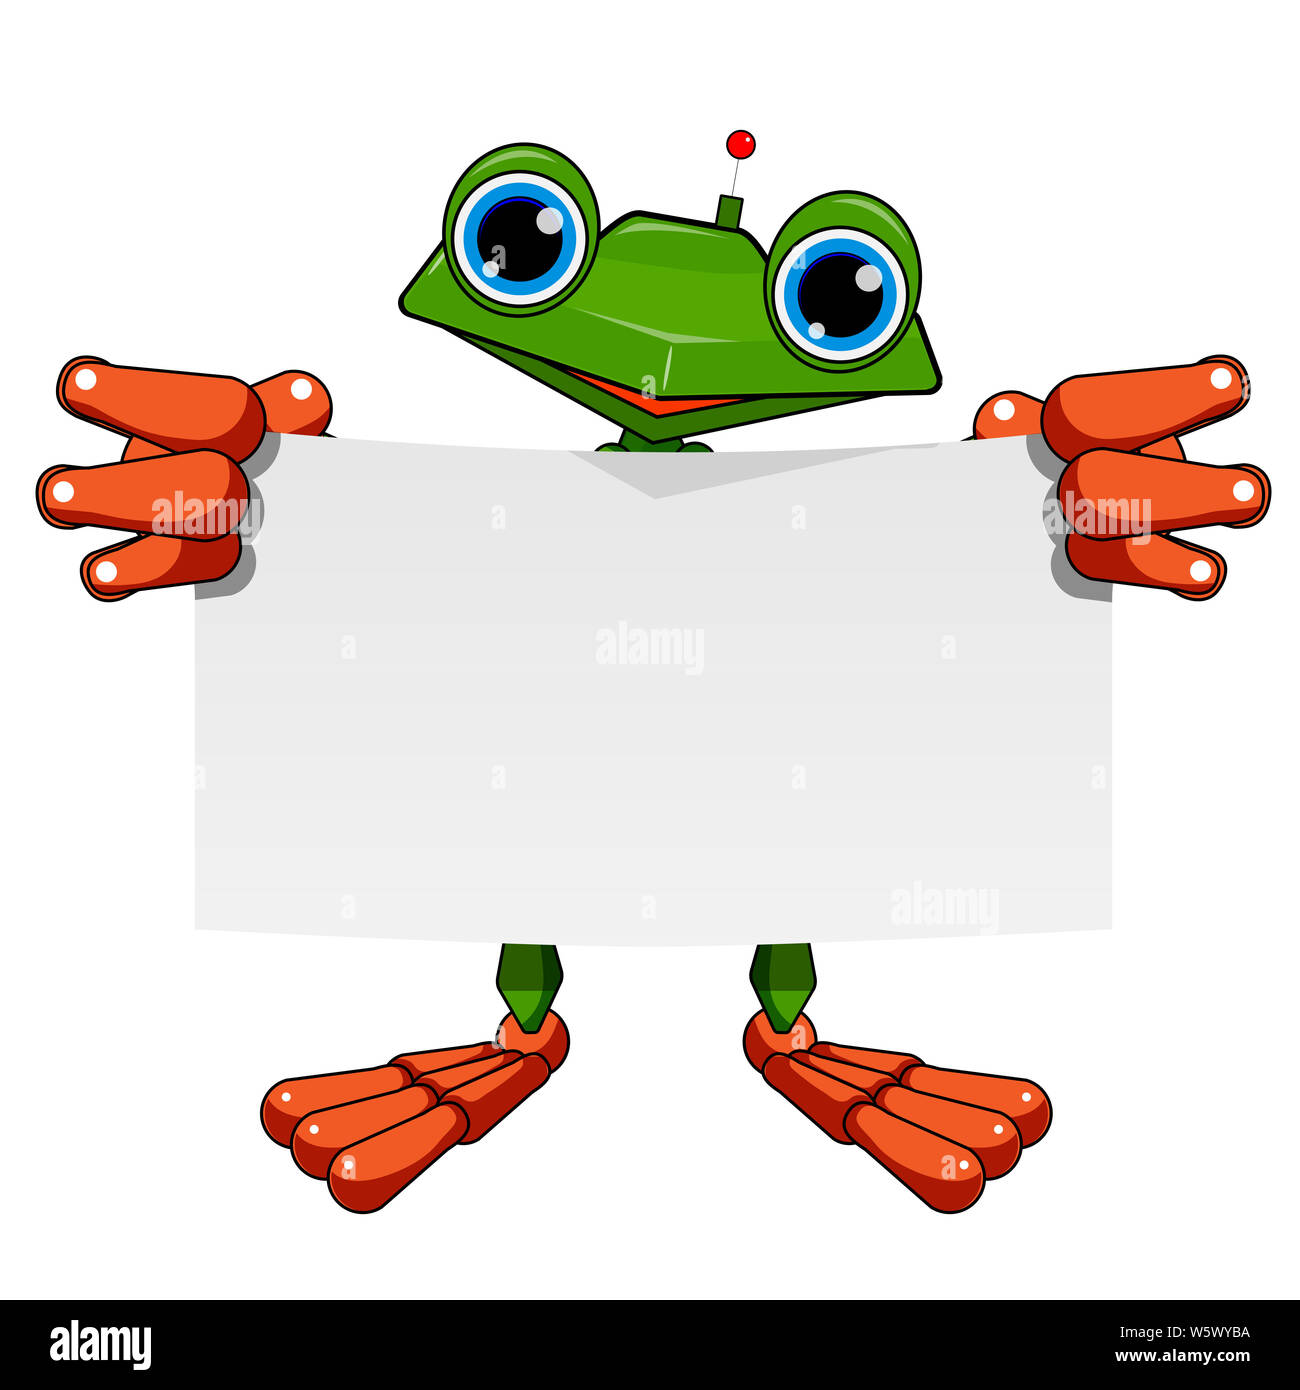 Lieferbar Abbildung: Frosch Roboter mit weißen Blatt auf weißem Hintergrund  Stockfotografie - Alamy